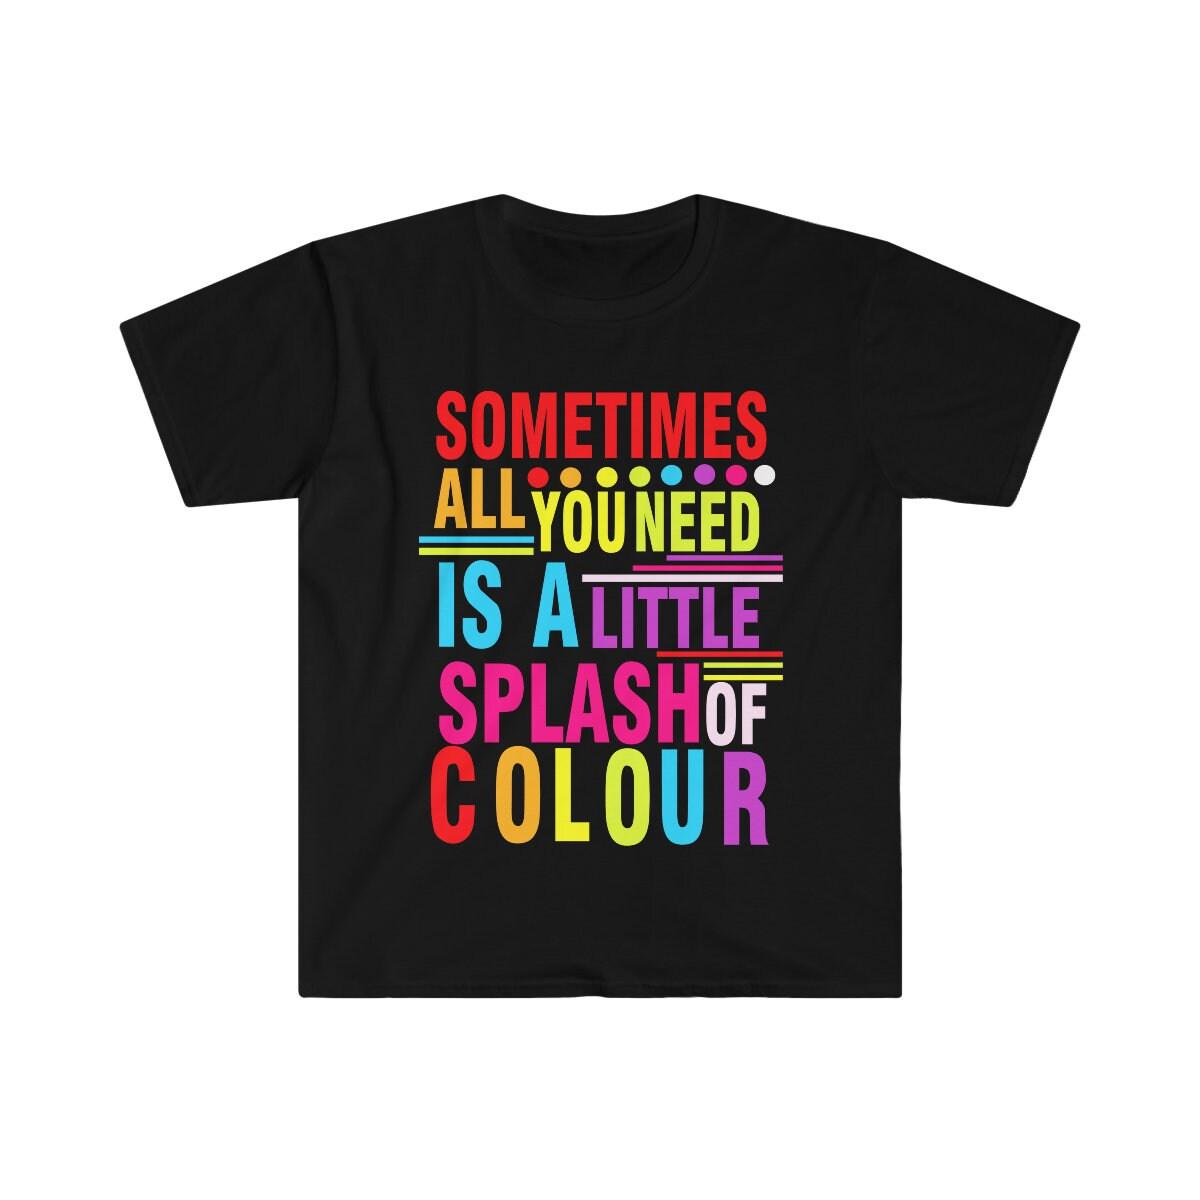 कभी-कभी आपको रंगीन शर्ट, सकारात्मक वाइब्स, प्रेरक ग्राफिक शर्ट, रंगीन शर्ट, समर बीच शर्ट की थोड़ी सी झलक की आवश्यकता होती है - प्लसमिनस्को.कॉम